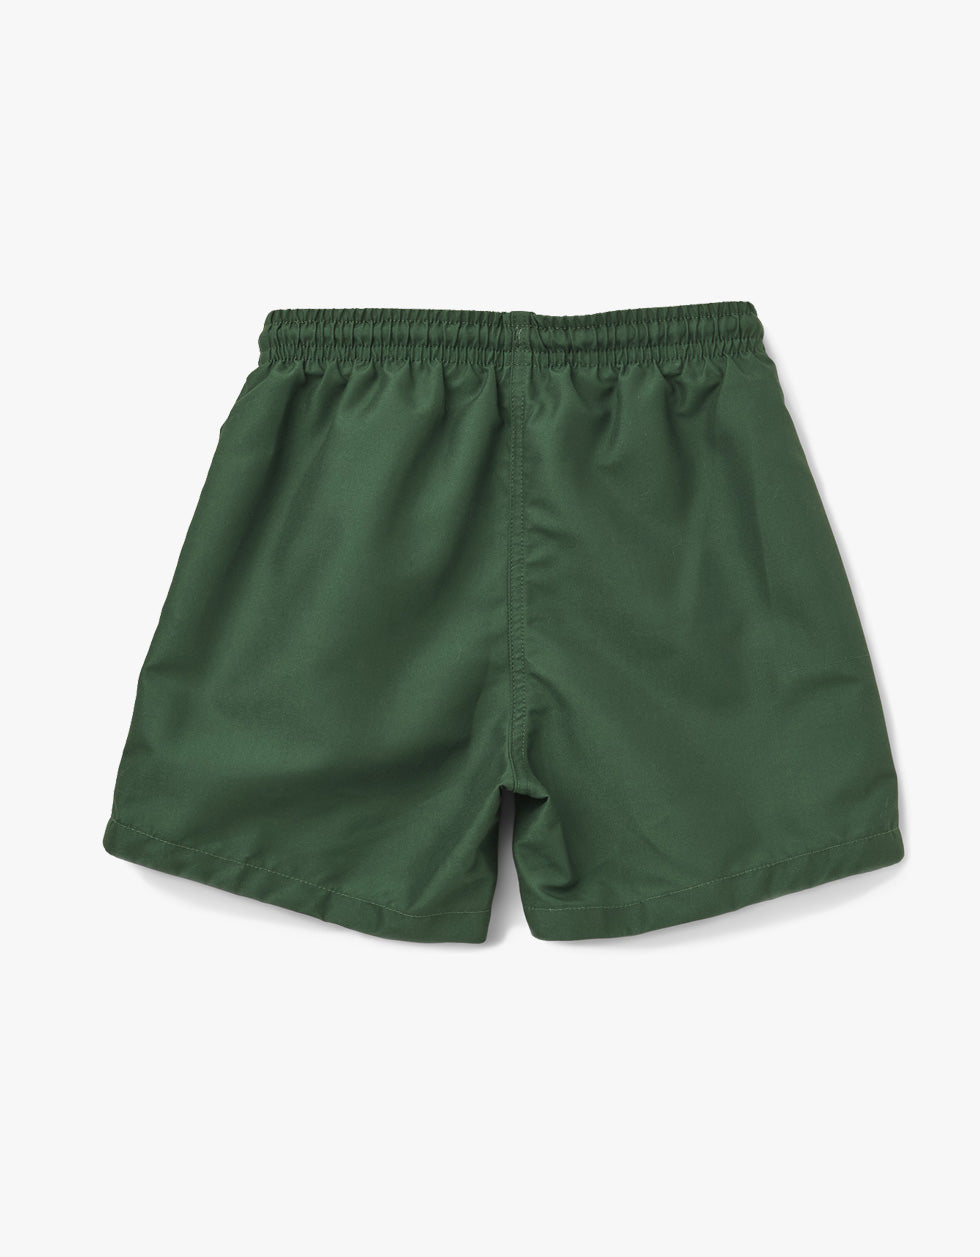 Duke Board Shorts - Garden Green